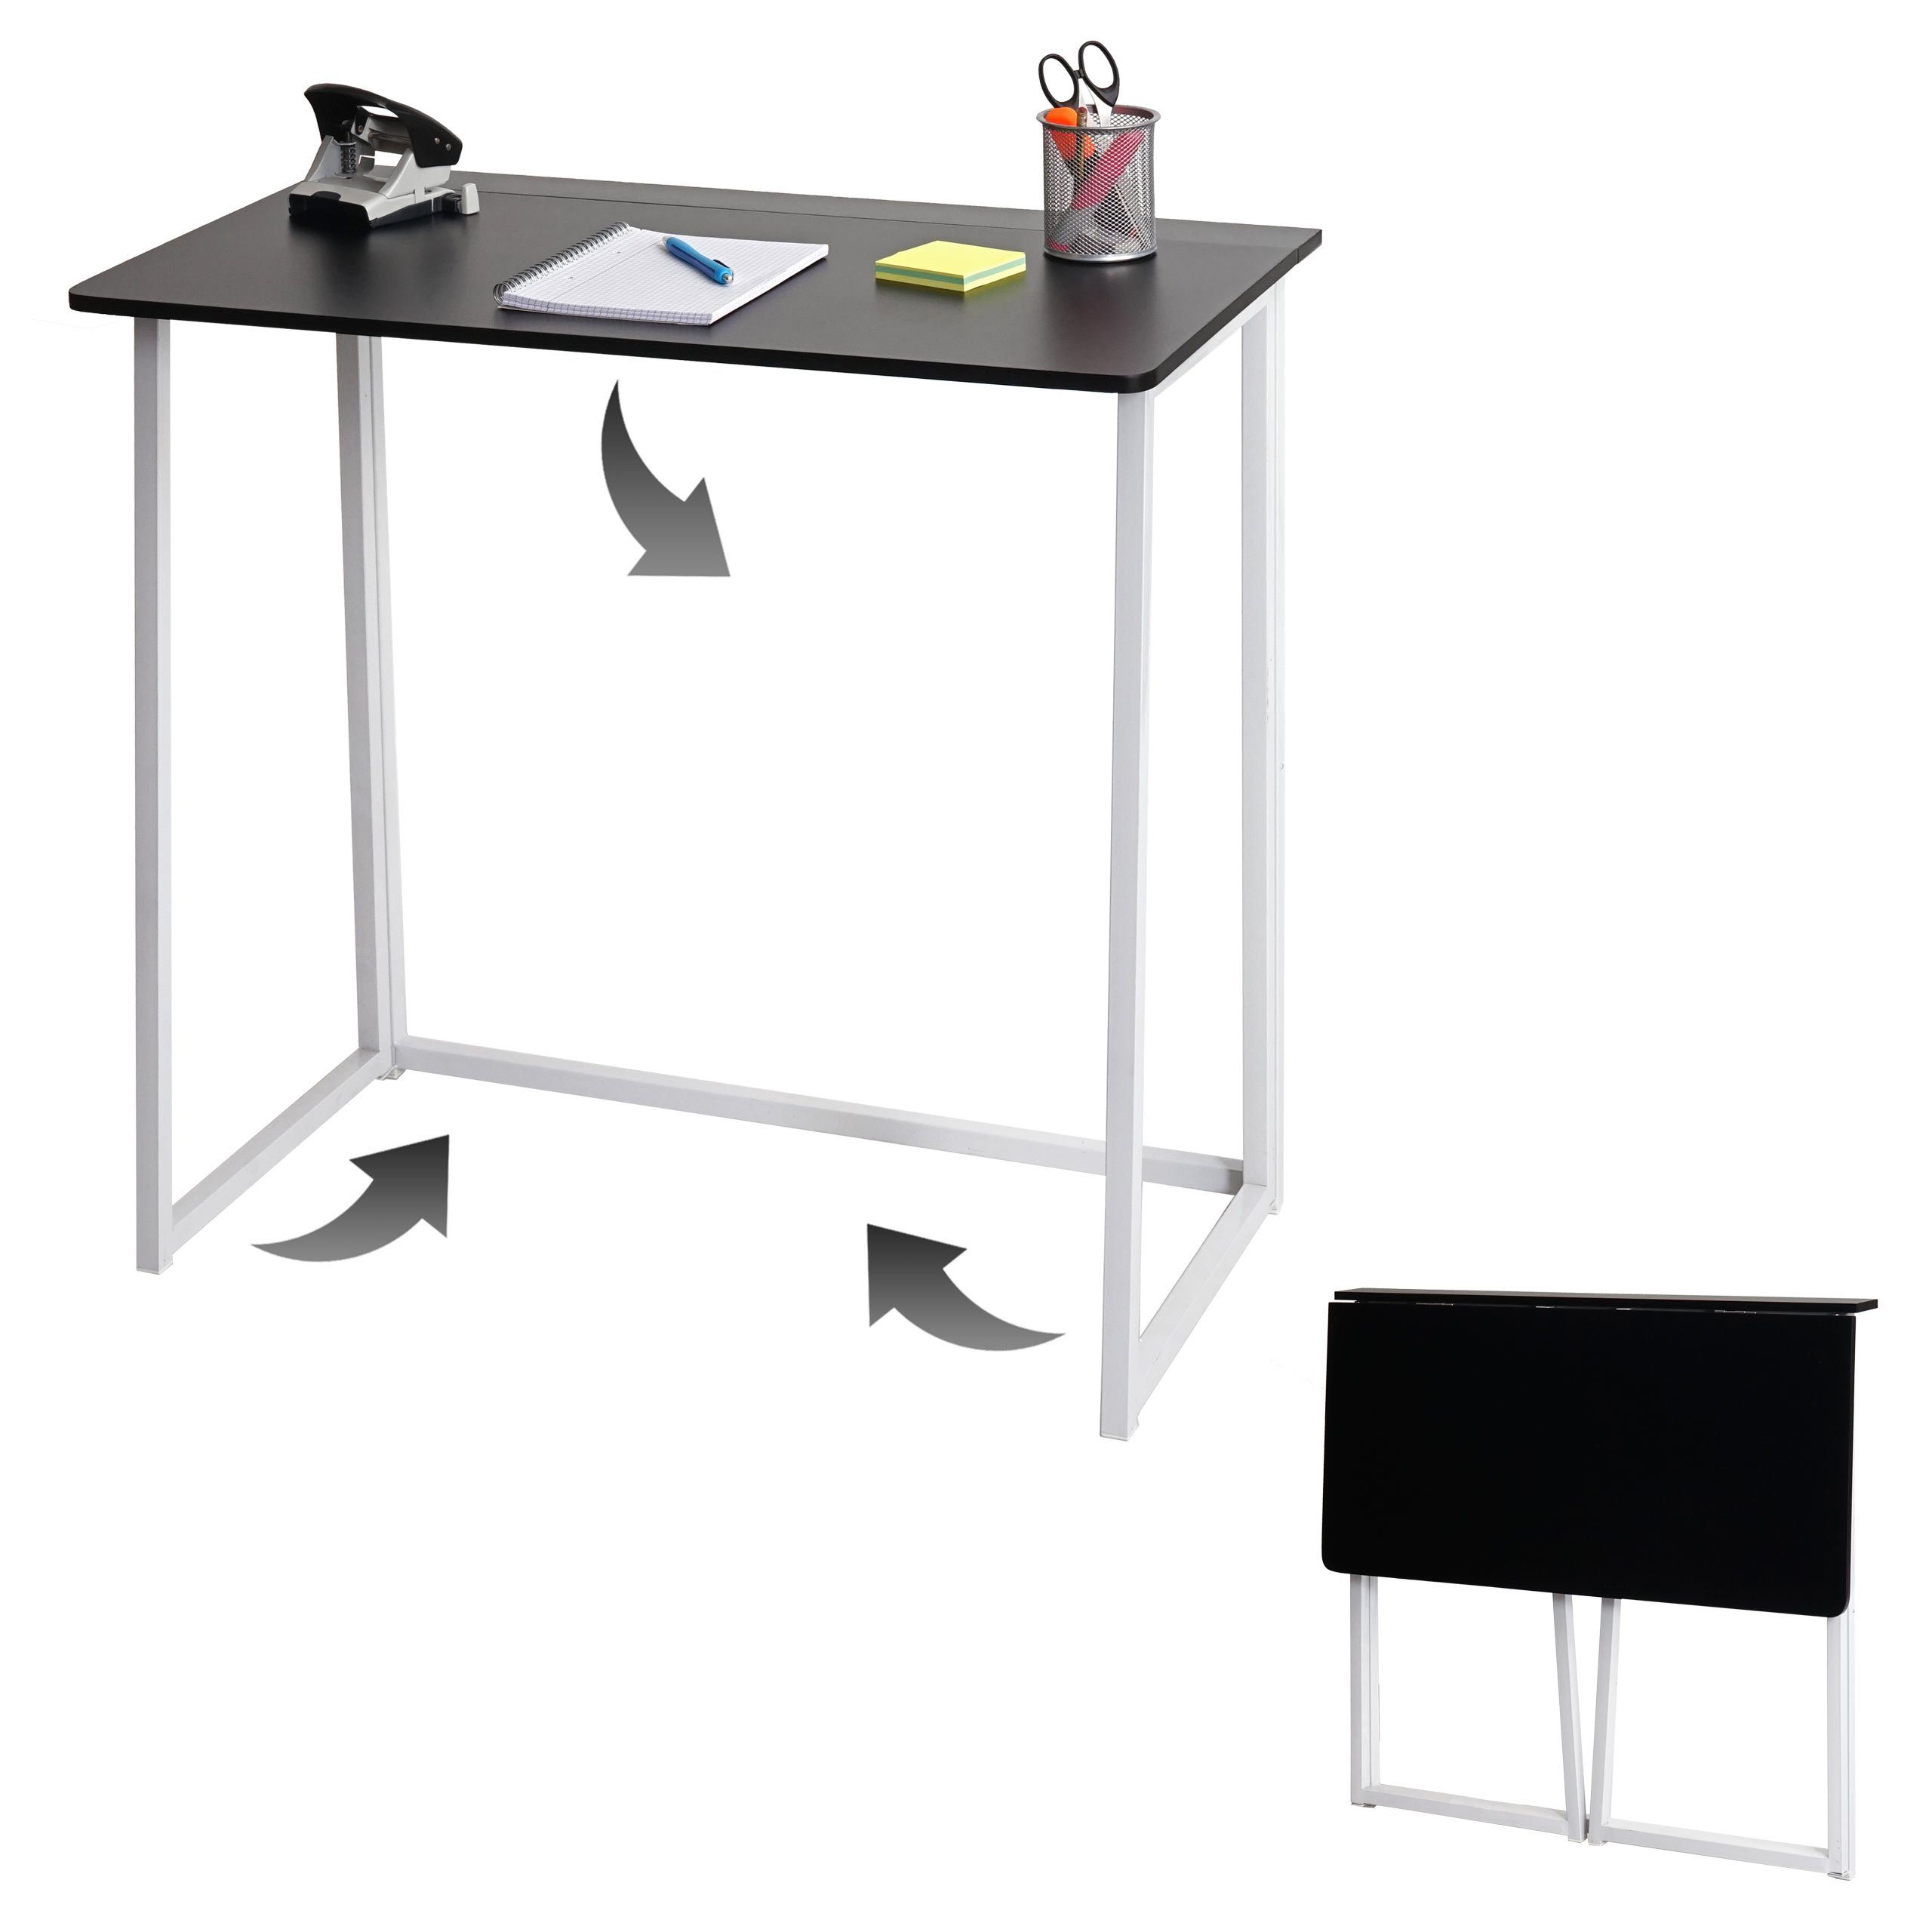 | schwarz-weiß zusammen Platzsparend MCW-K67, schwarz Klappbar weiß Schreibtisch klappbar, MCW |